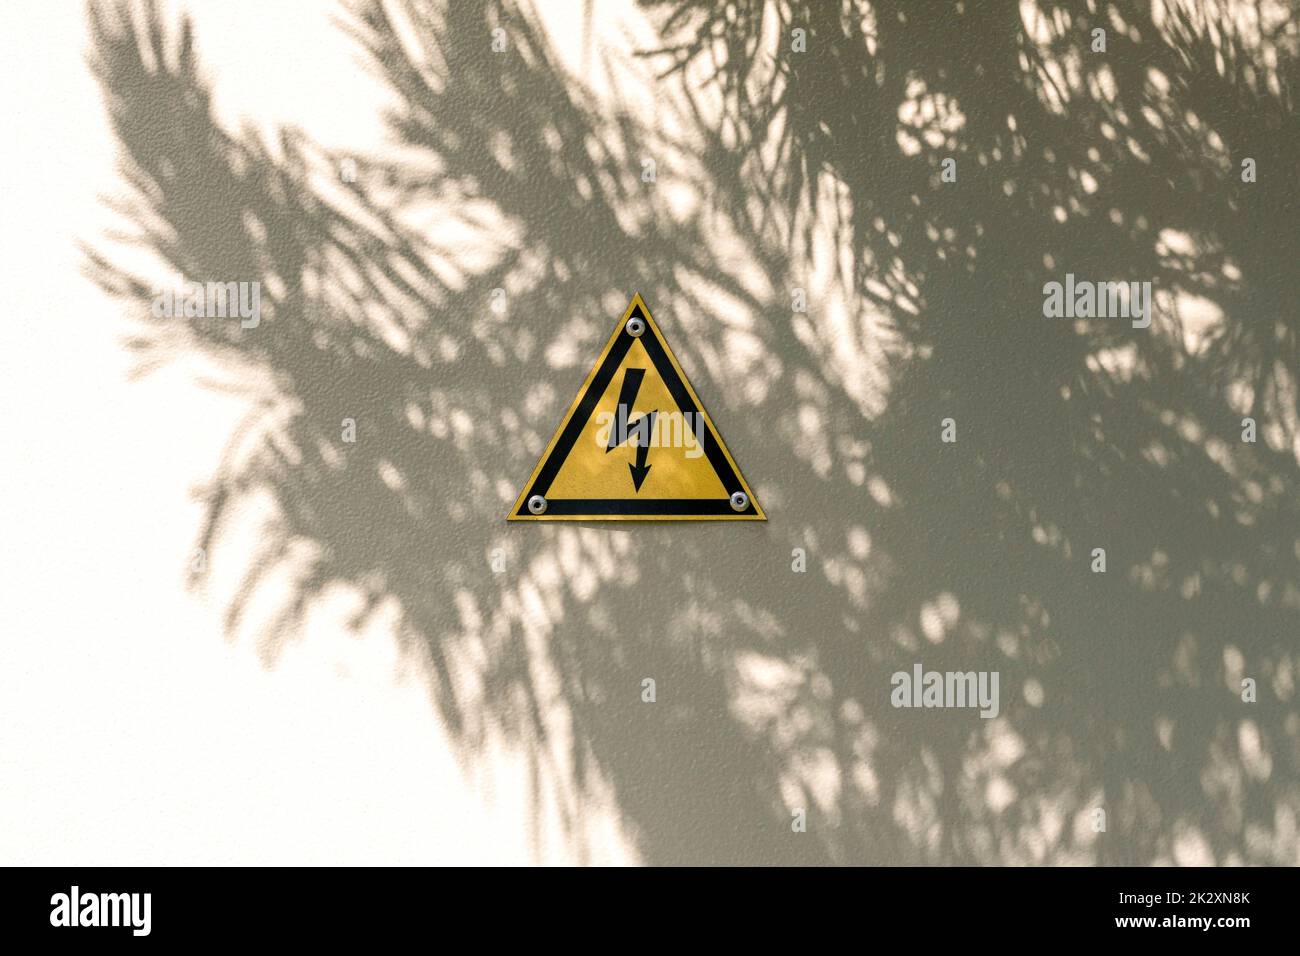 Señal de advertencia de triángulo amarillo de alta tensión en puertas metálicas grises con sombra de árbol Foto de stock